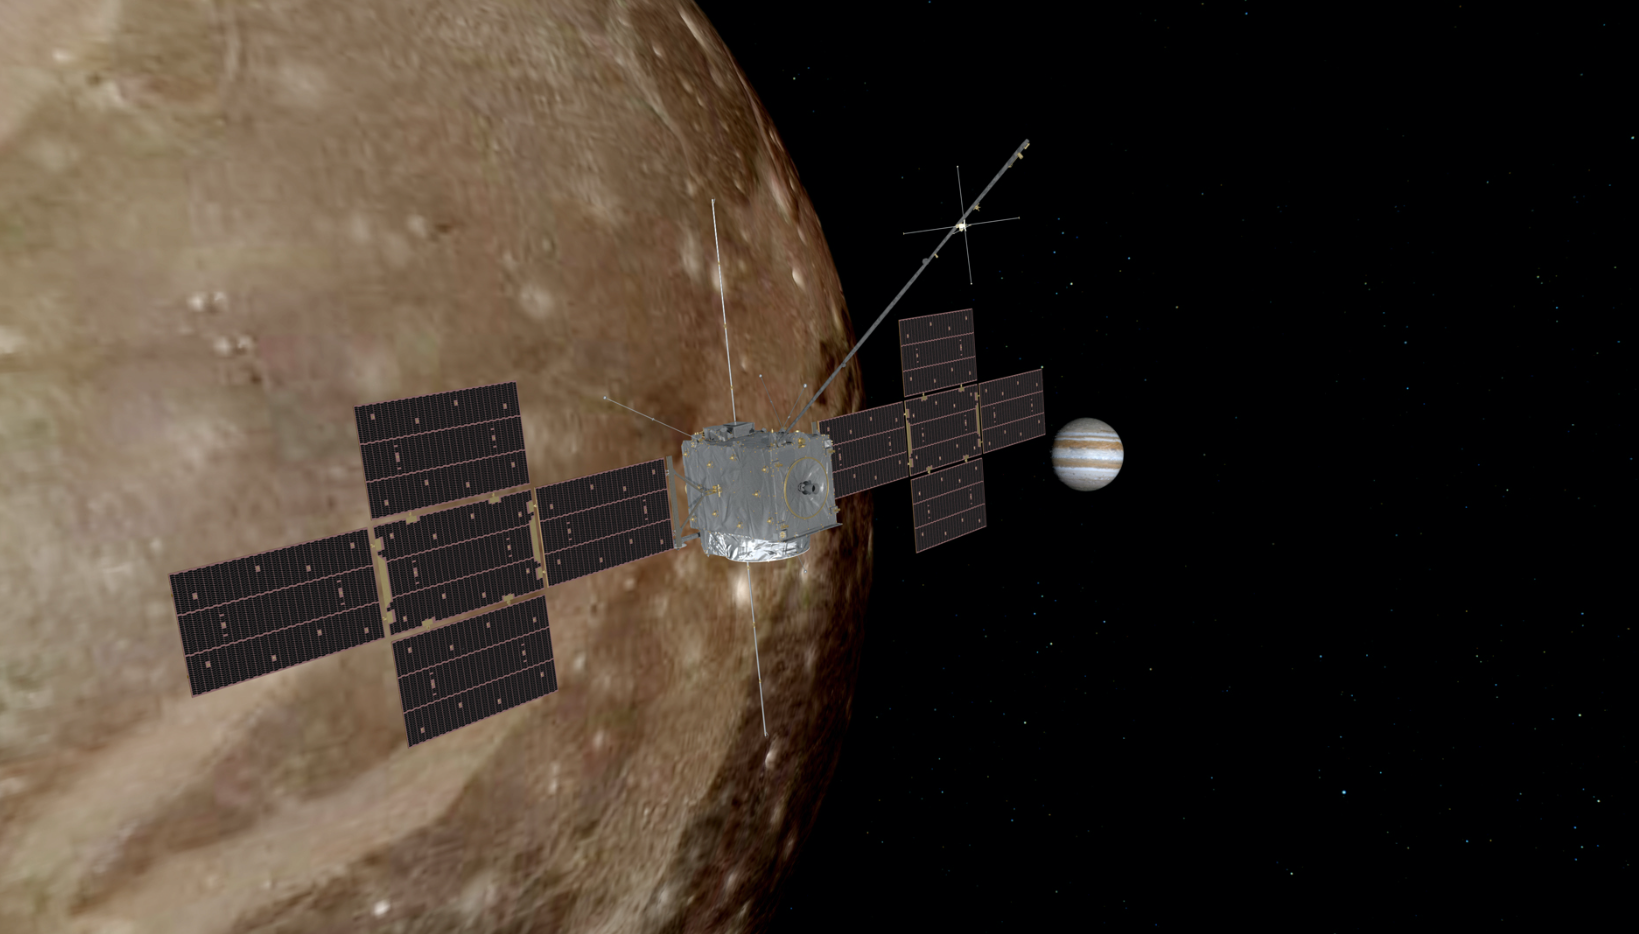 Misión Juice emprende su largo viaje de ocho años a Júpiter